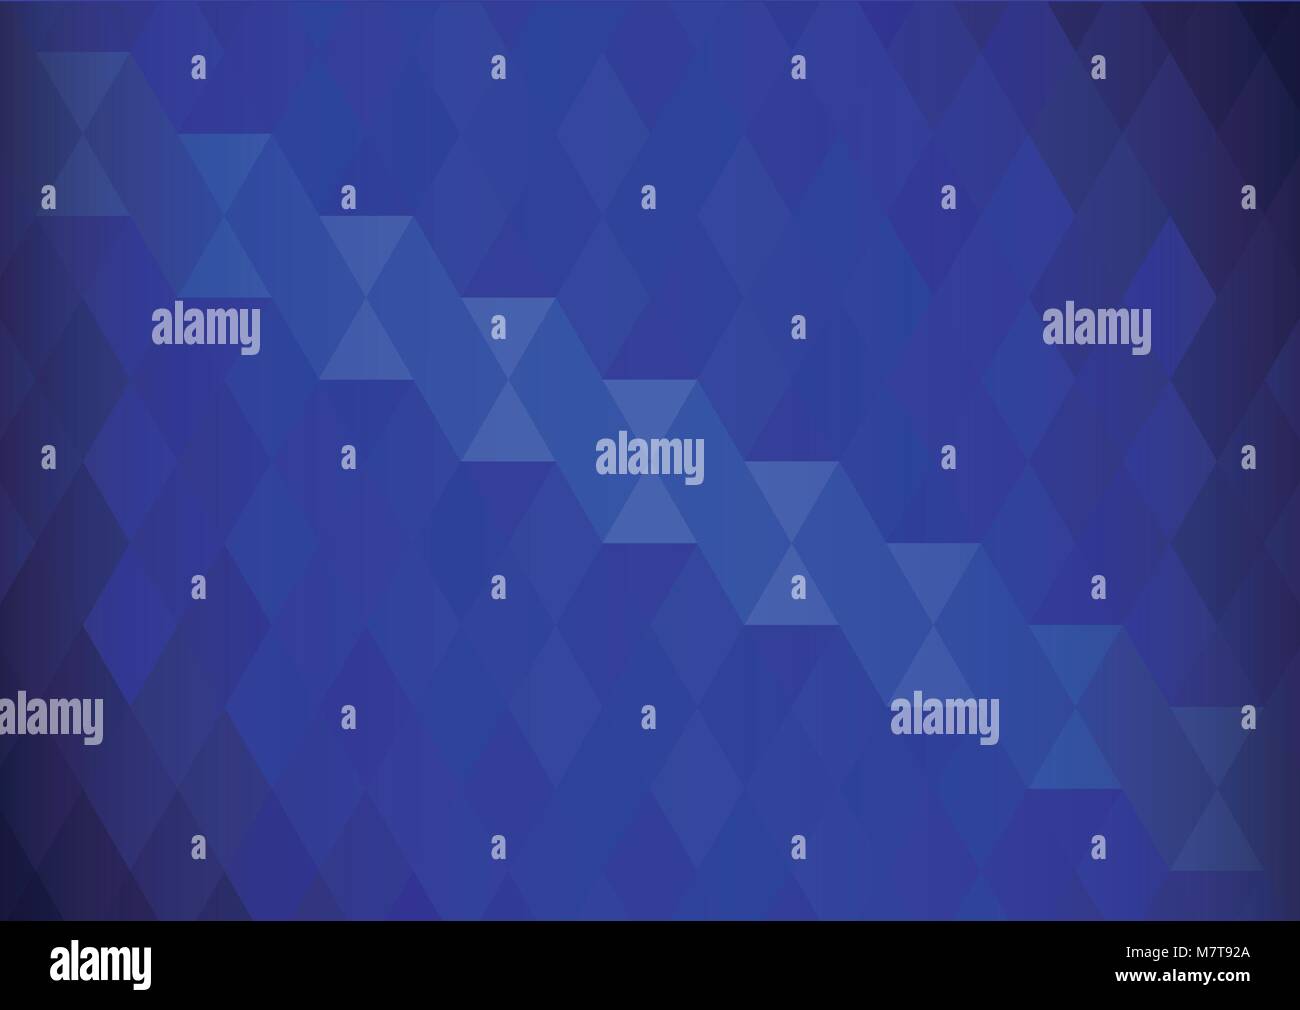 Vecteur de conception abstract background avec concept triangle bleu neat Illustration de Vecteur